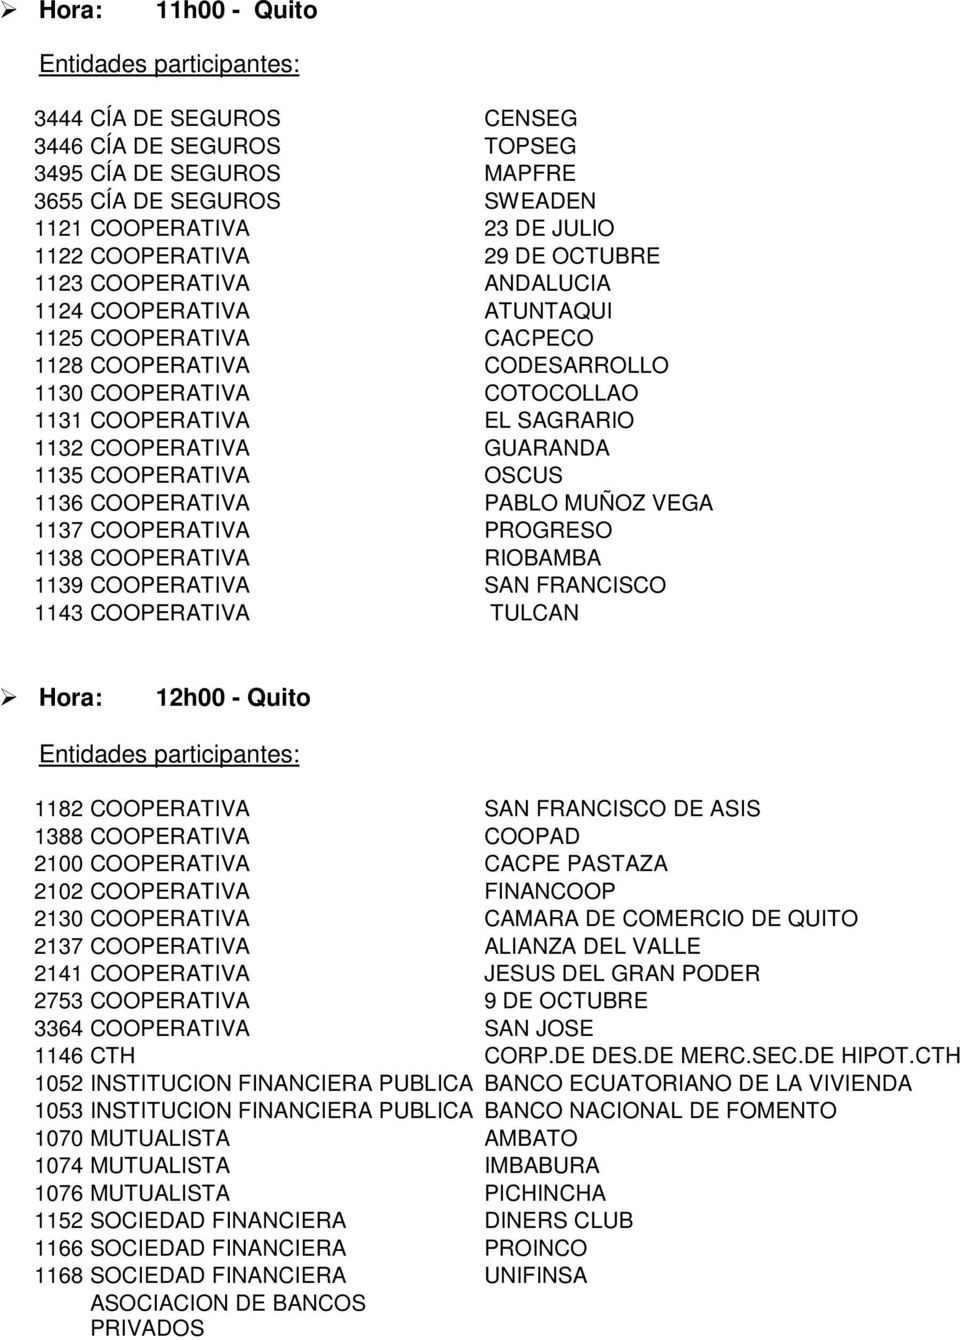 1136 COOPERATIVA PABLO MUÑOZ VEGA 1137 COOPERATIVA PROGRESO 1138 COOPERATIVA RIOBAMBA 1139 COOPERATIVA SAN FRANCISCO 1143 COOPERATIVA TULCAN 12h00 - Quito 1182 COOPERATIVA SAN FRANCISCO DE ASIS 1388